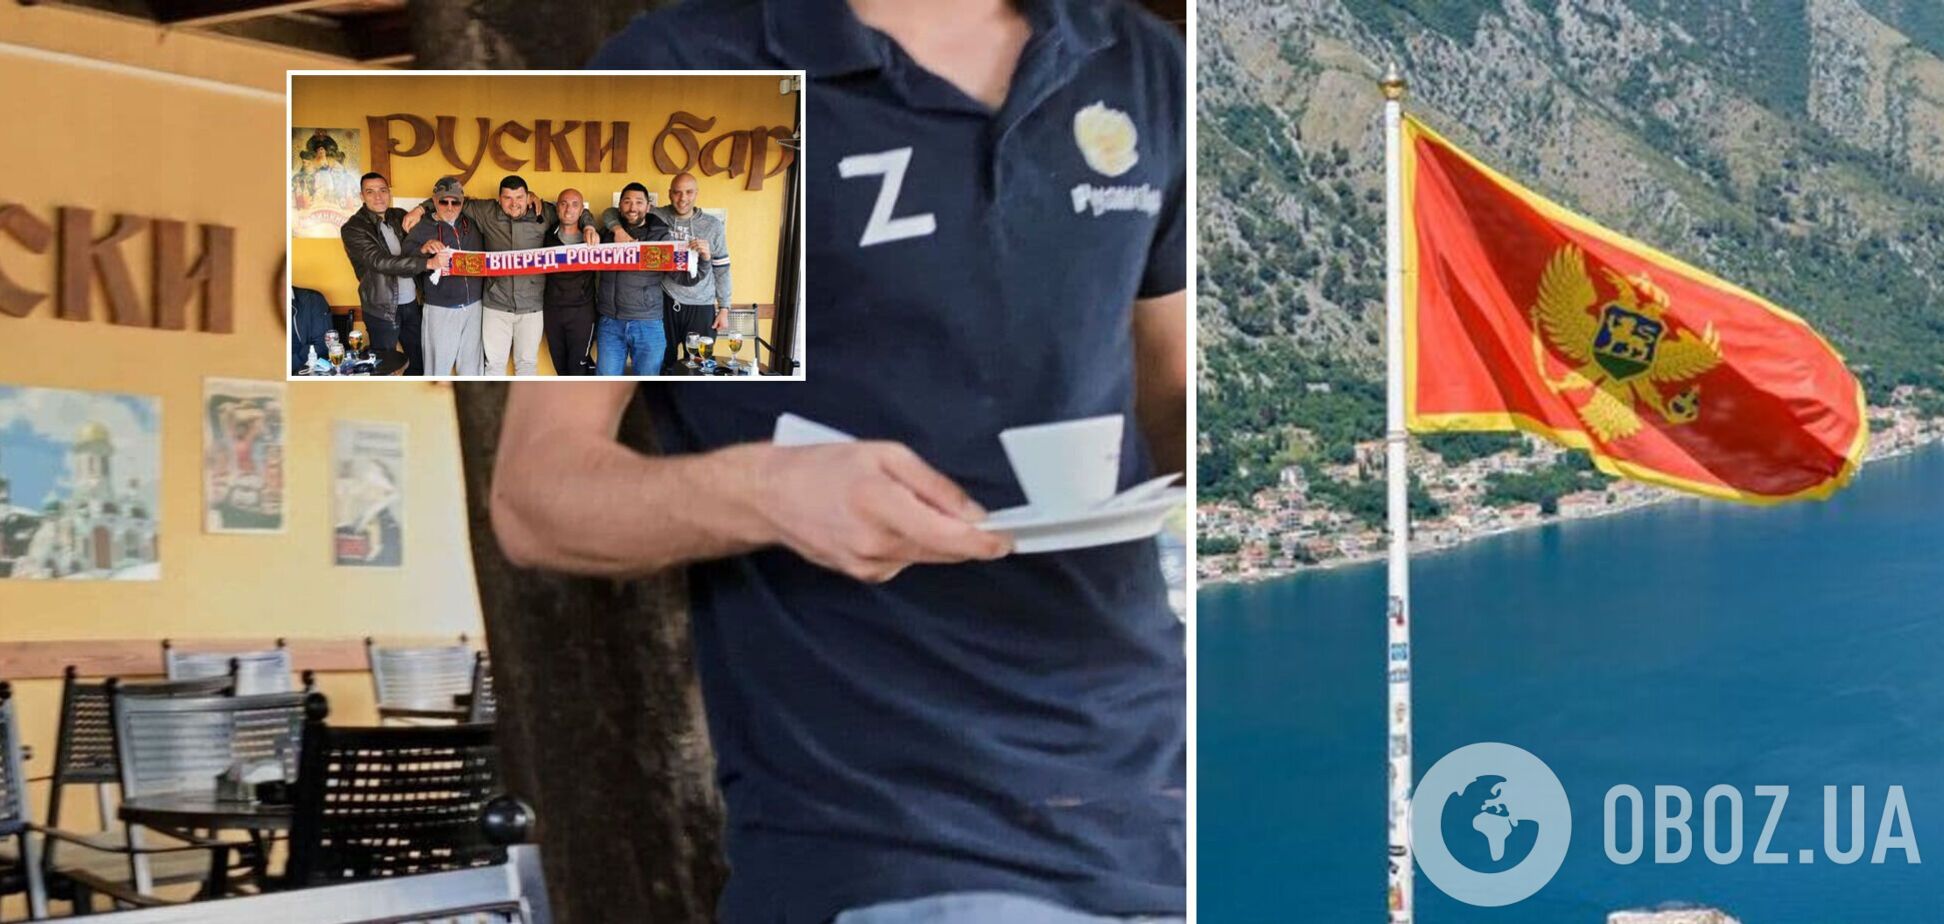 Официанты черногорского кафе 'Руски Бар' носят форму с буквой Z: в посольстве Украины сделали заявление